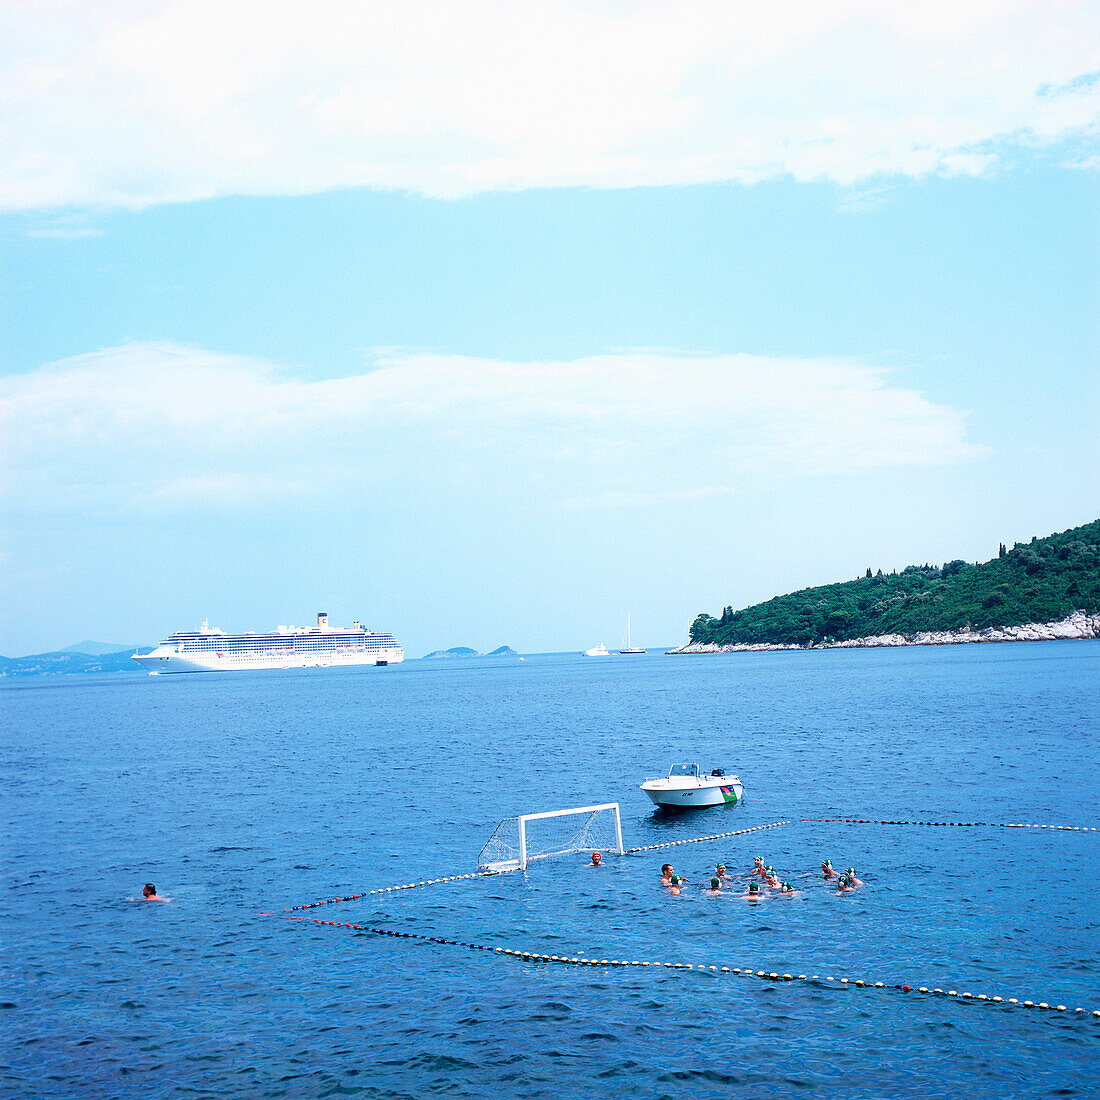 Wasserballspiel in der Adria, Dubrovnik, Dalmatien, Kroatien